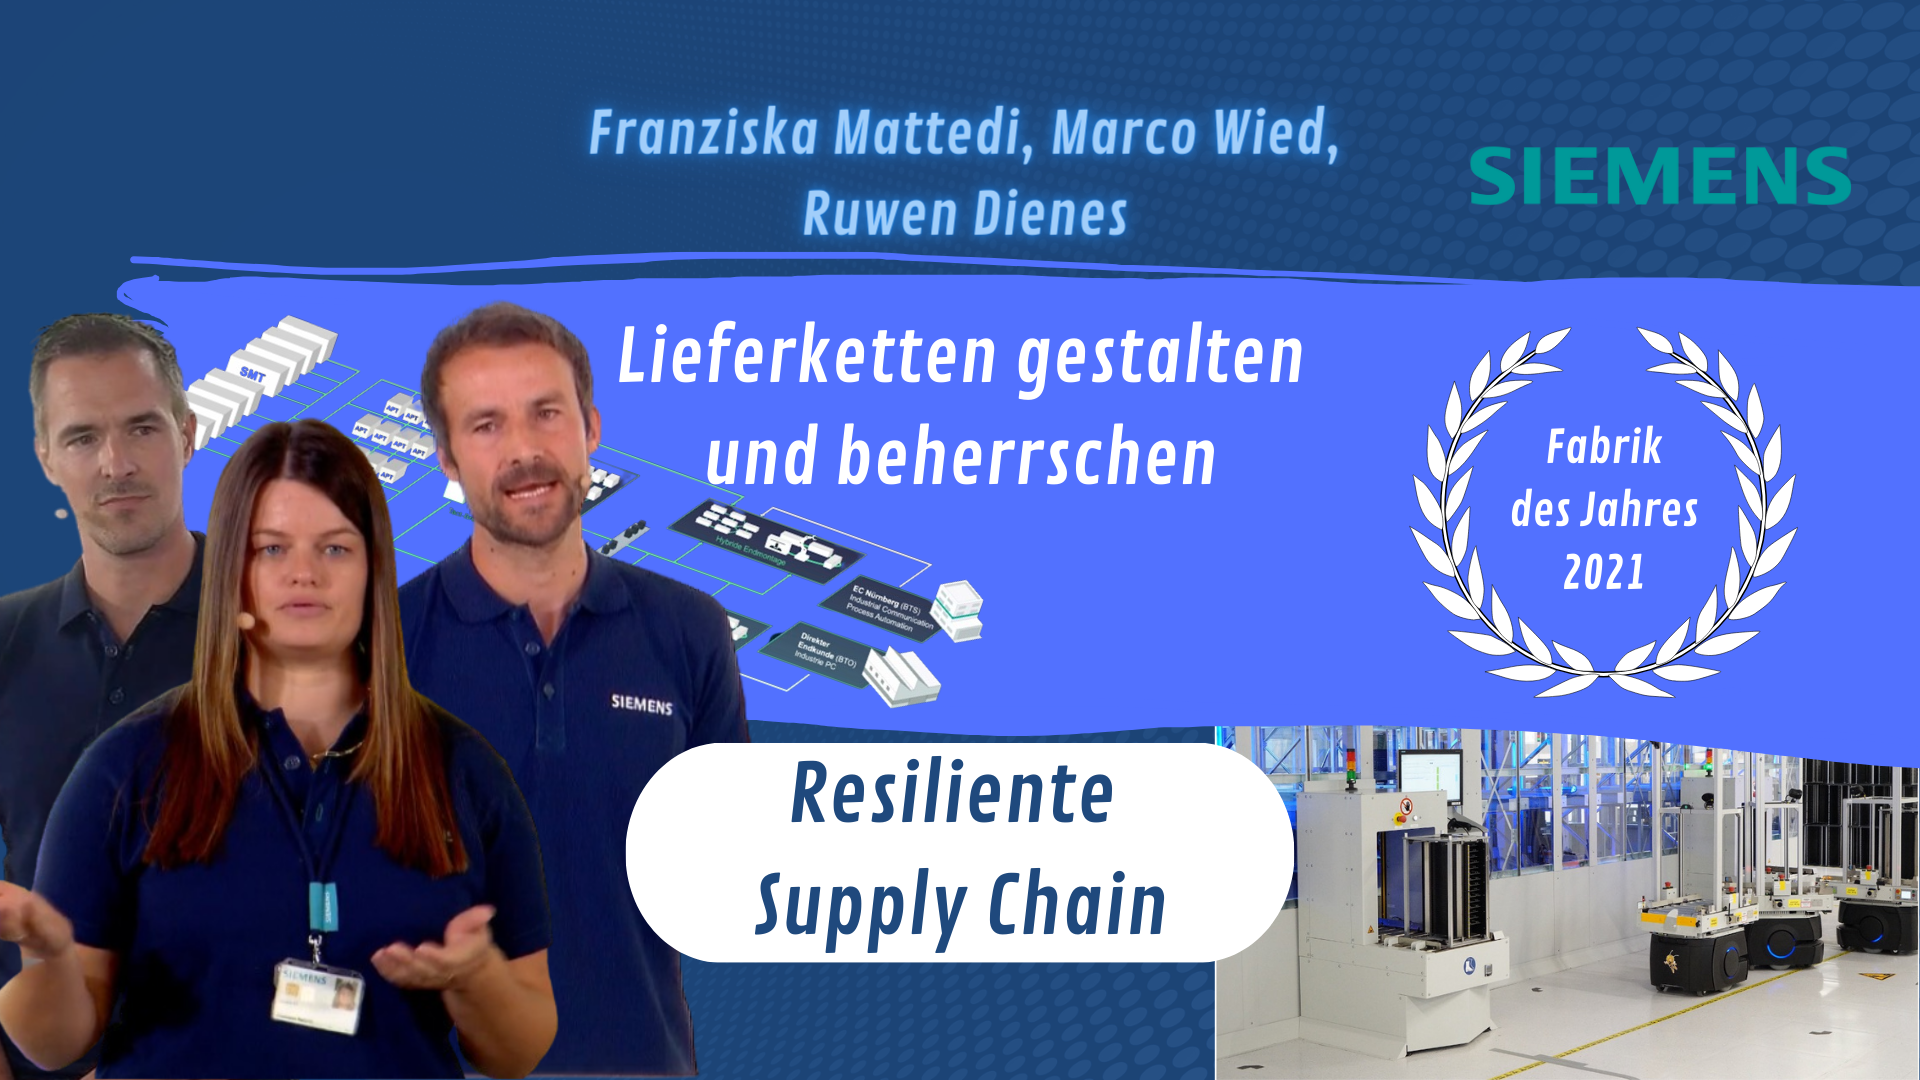 DIGITAL - Resiliente Supply Chain mit Franziska Mattedi, Marco Wied & Ruwen Dienes